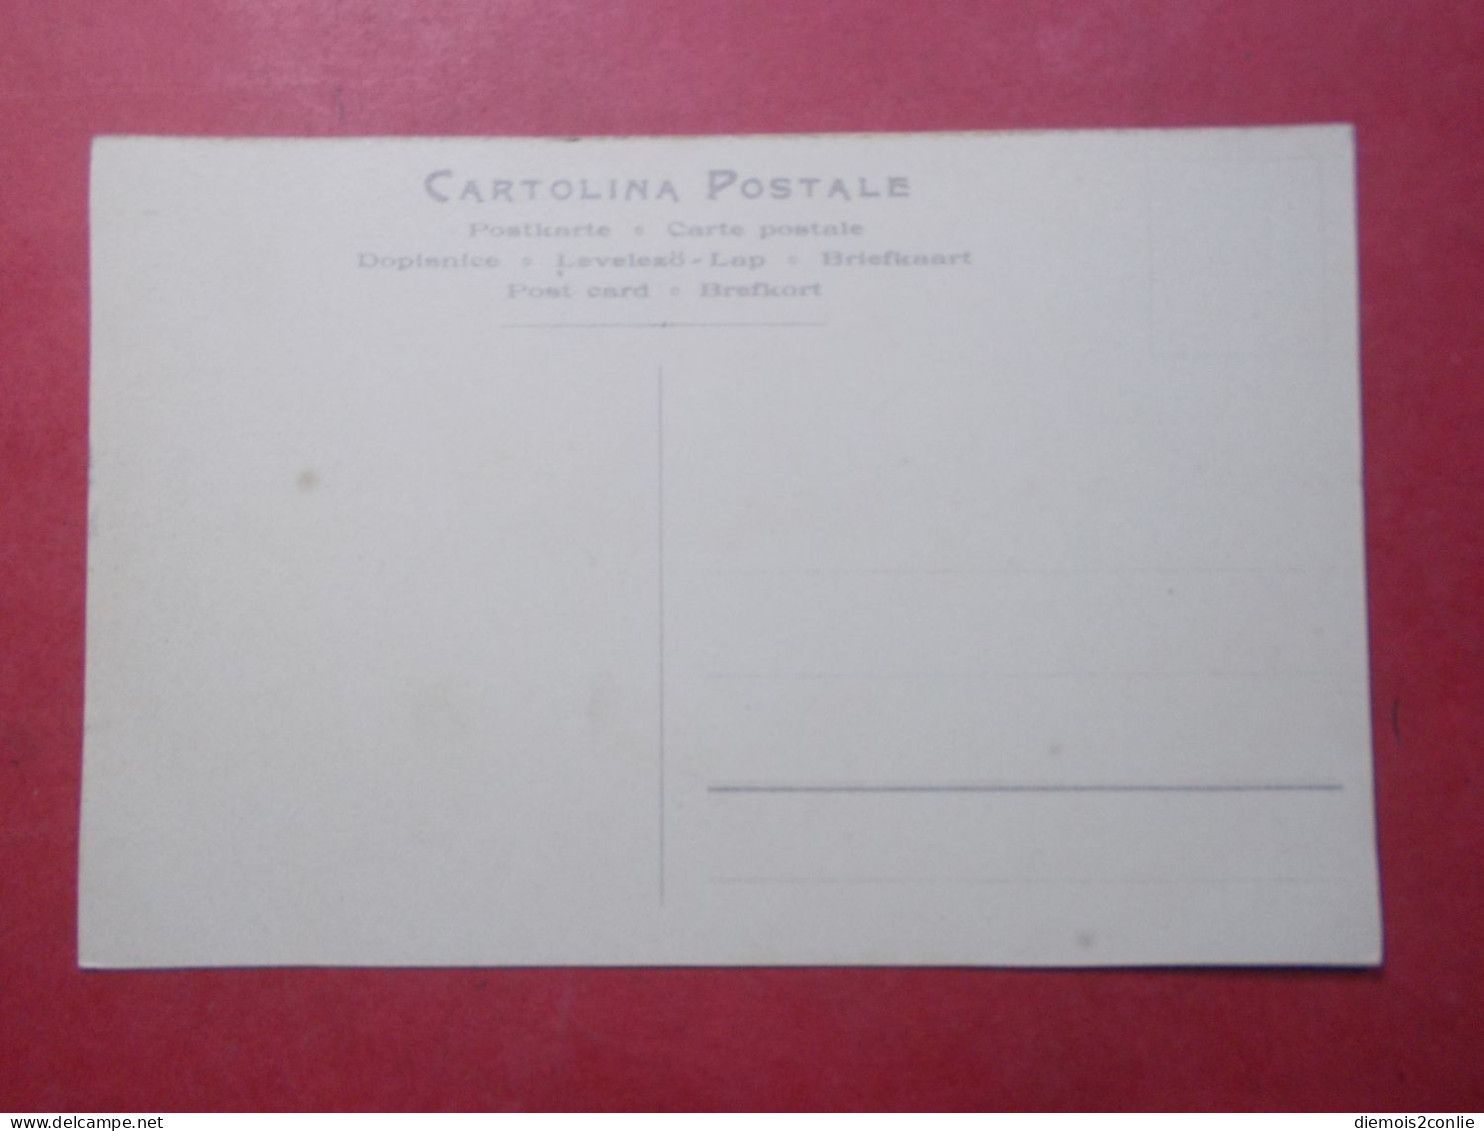 Carte Postale - ITALIE - Interieur De La Gare De Turin (4784) - Transportes